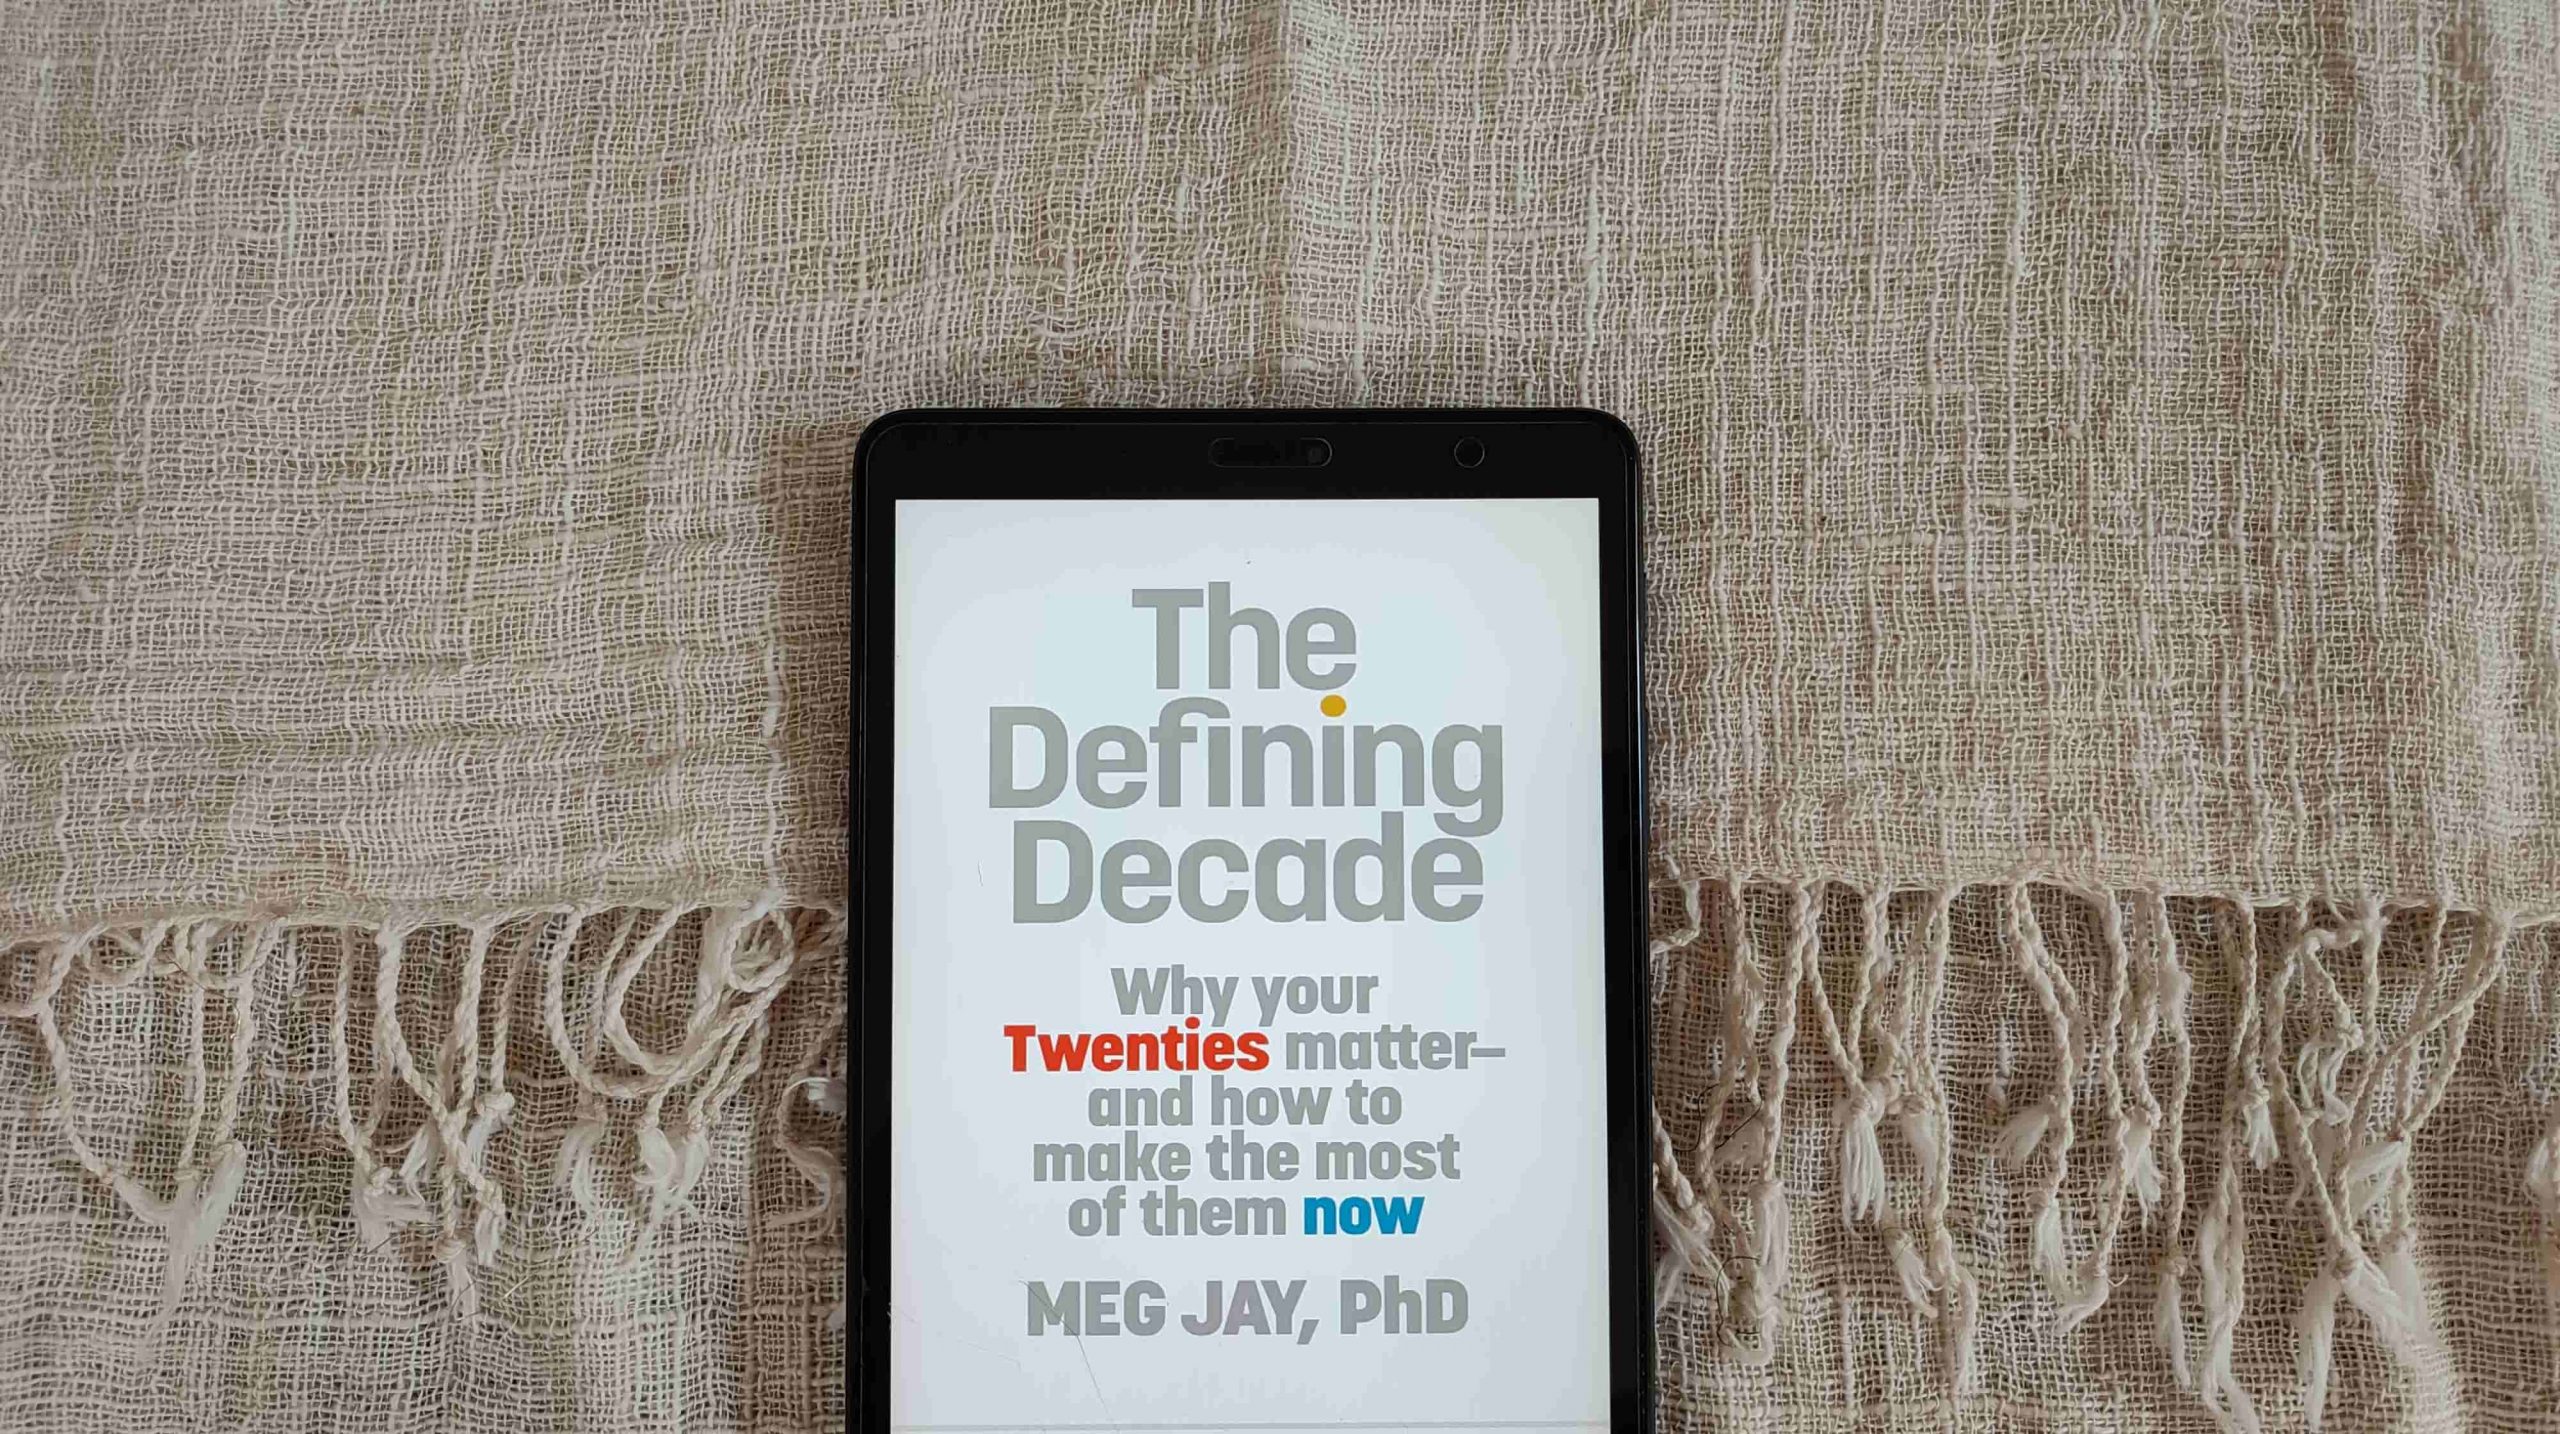 3 Hal Penting di Umur 20an Berdasarkan The Defining Decade oleh Meg Jay